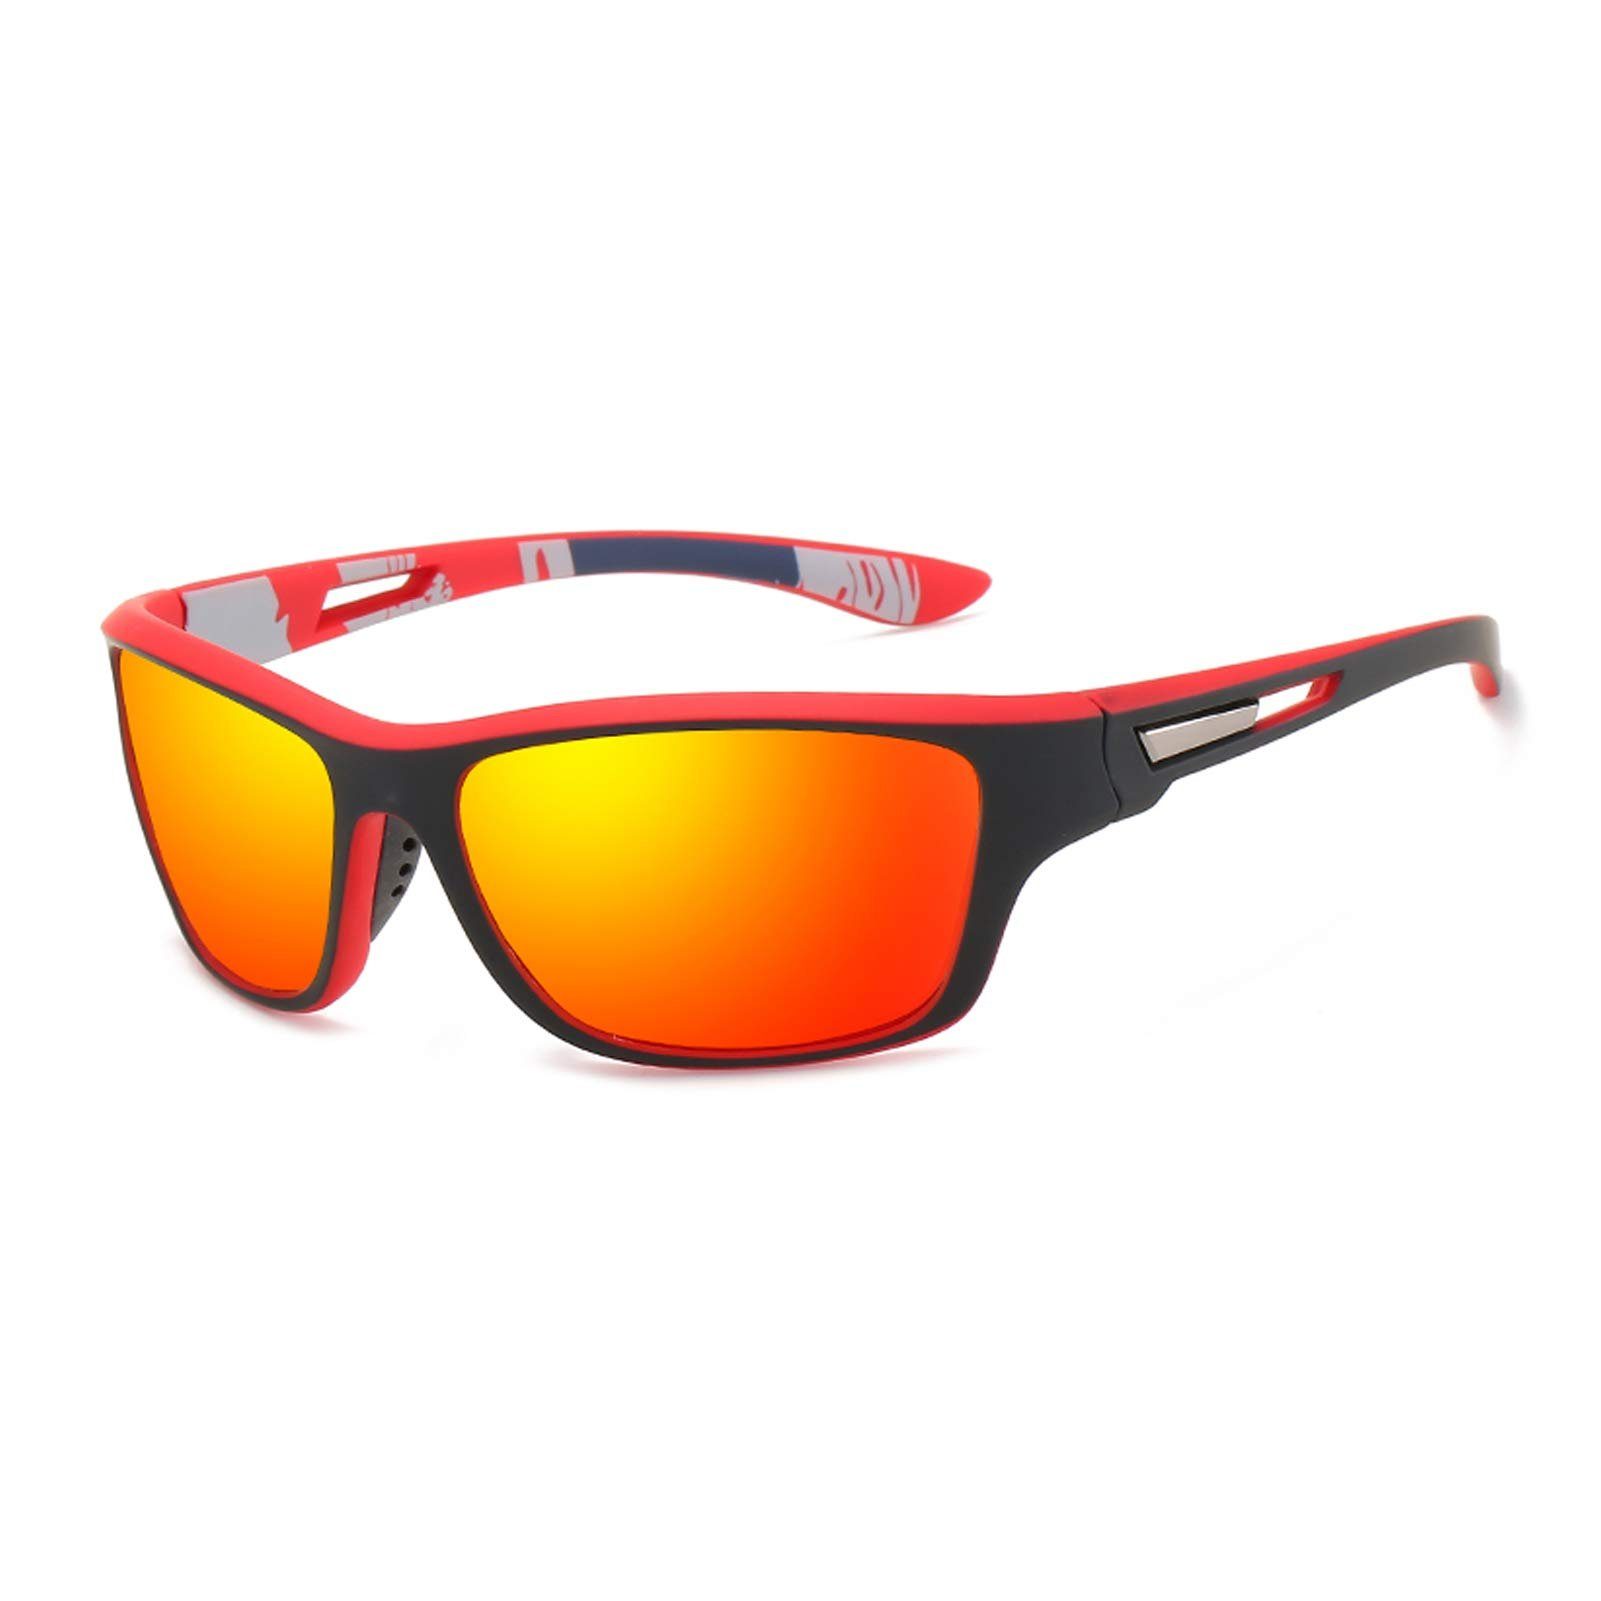 Leway Sonnenbrille »Polarisierte Sportbrille Sonnenbrille Herren  fahrradbrille damen mit UV400 Schutz für Autofahren Laufen Radfahren Angeln  Golf Sonnenbrille« online kaufen | OTTO